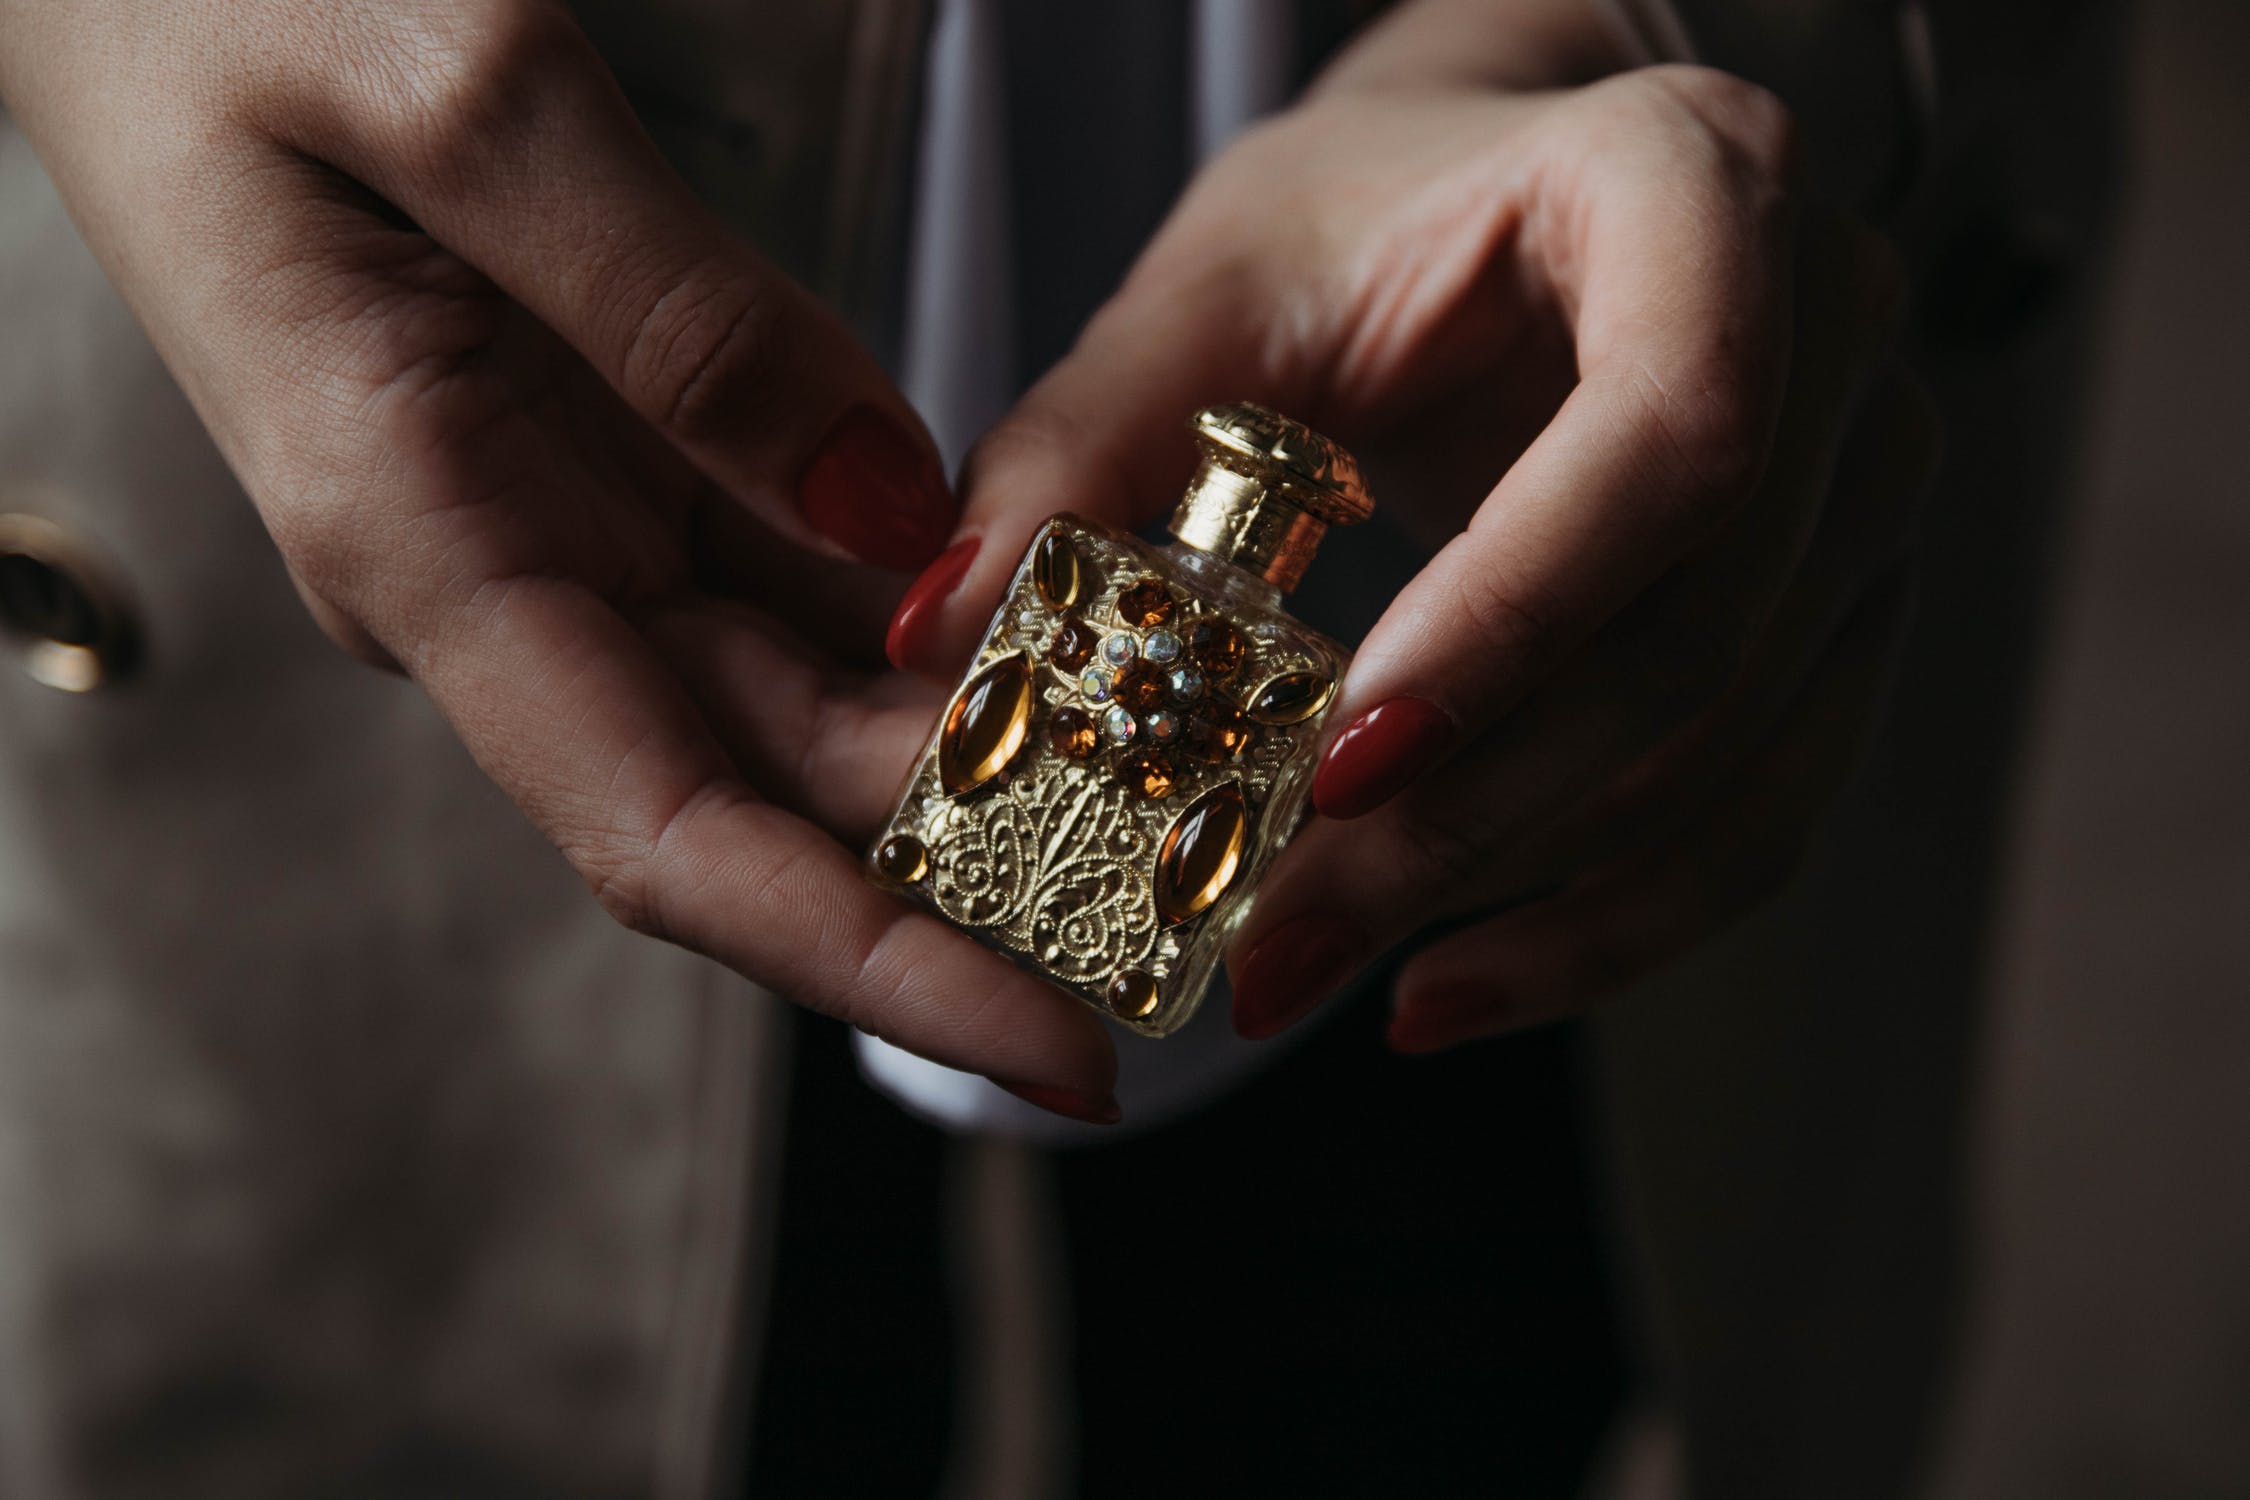 In der Tasche eines alten Mantels wurde ein juwelenbesetztes Parfümfläschchen gefunden | Quelle: Pexels